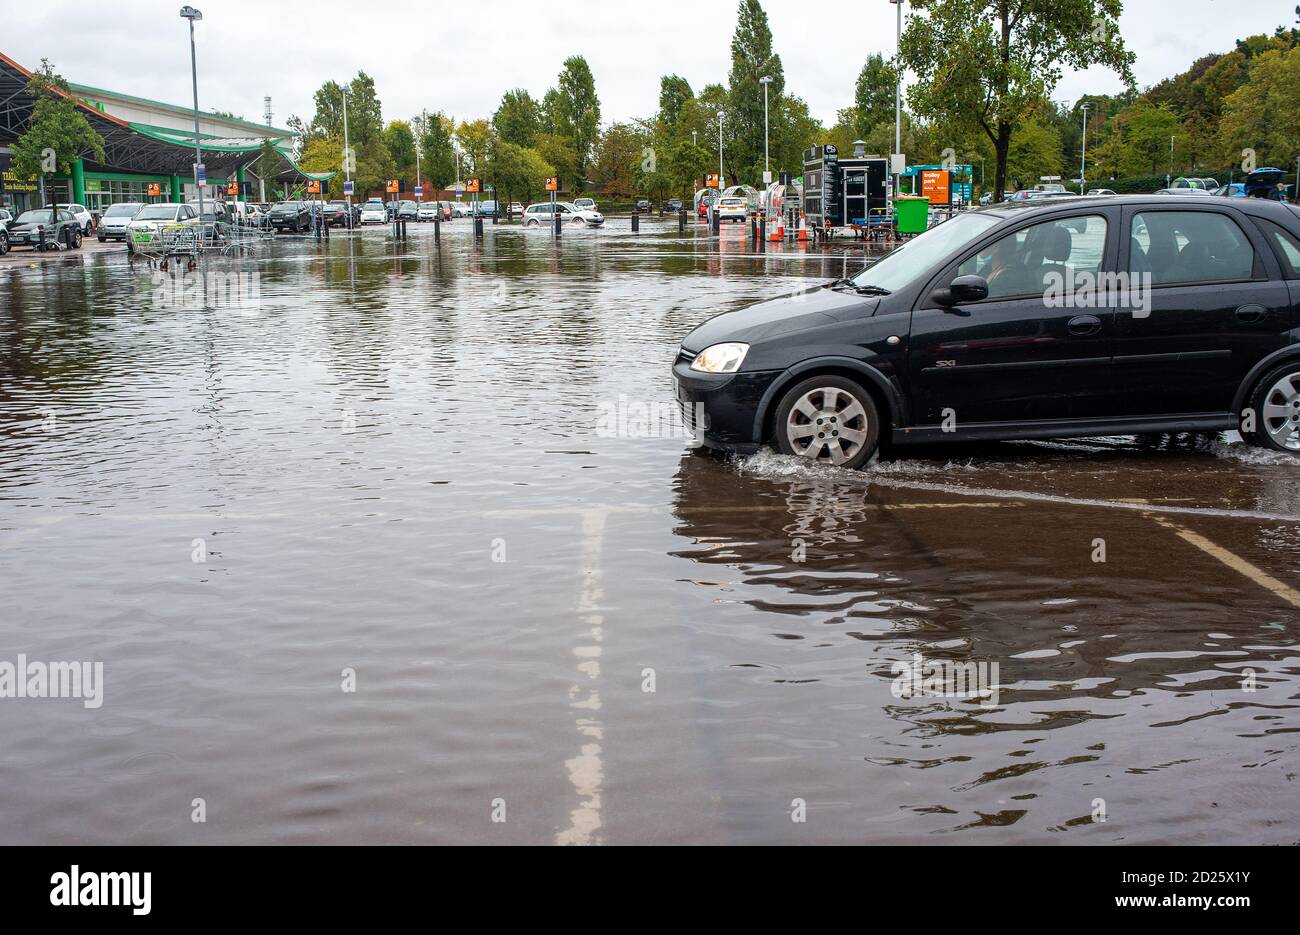 Parcheggio al dettaglio sommerso dopo forti downpoours. L'alluvione ha reso pericolosa la guida con alcuni proprietari di auto incapaci di accedere ai loro veicoli. Foto Stock